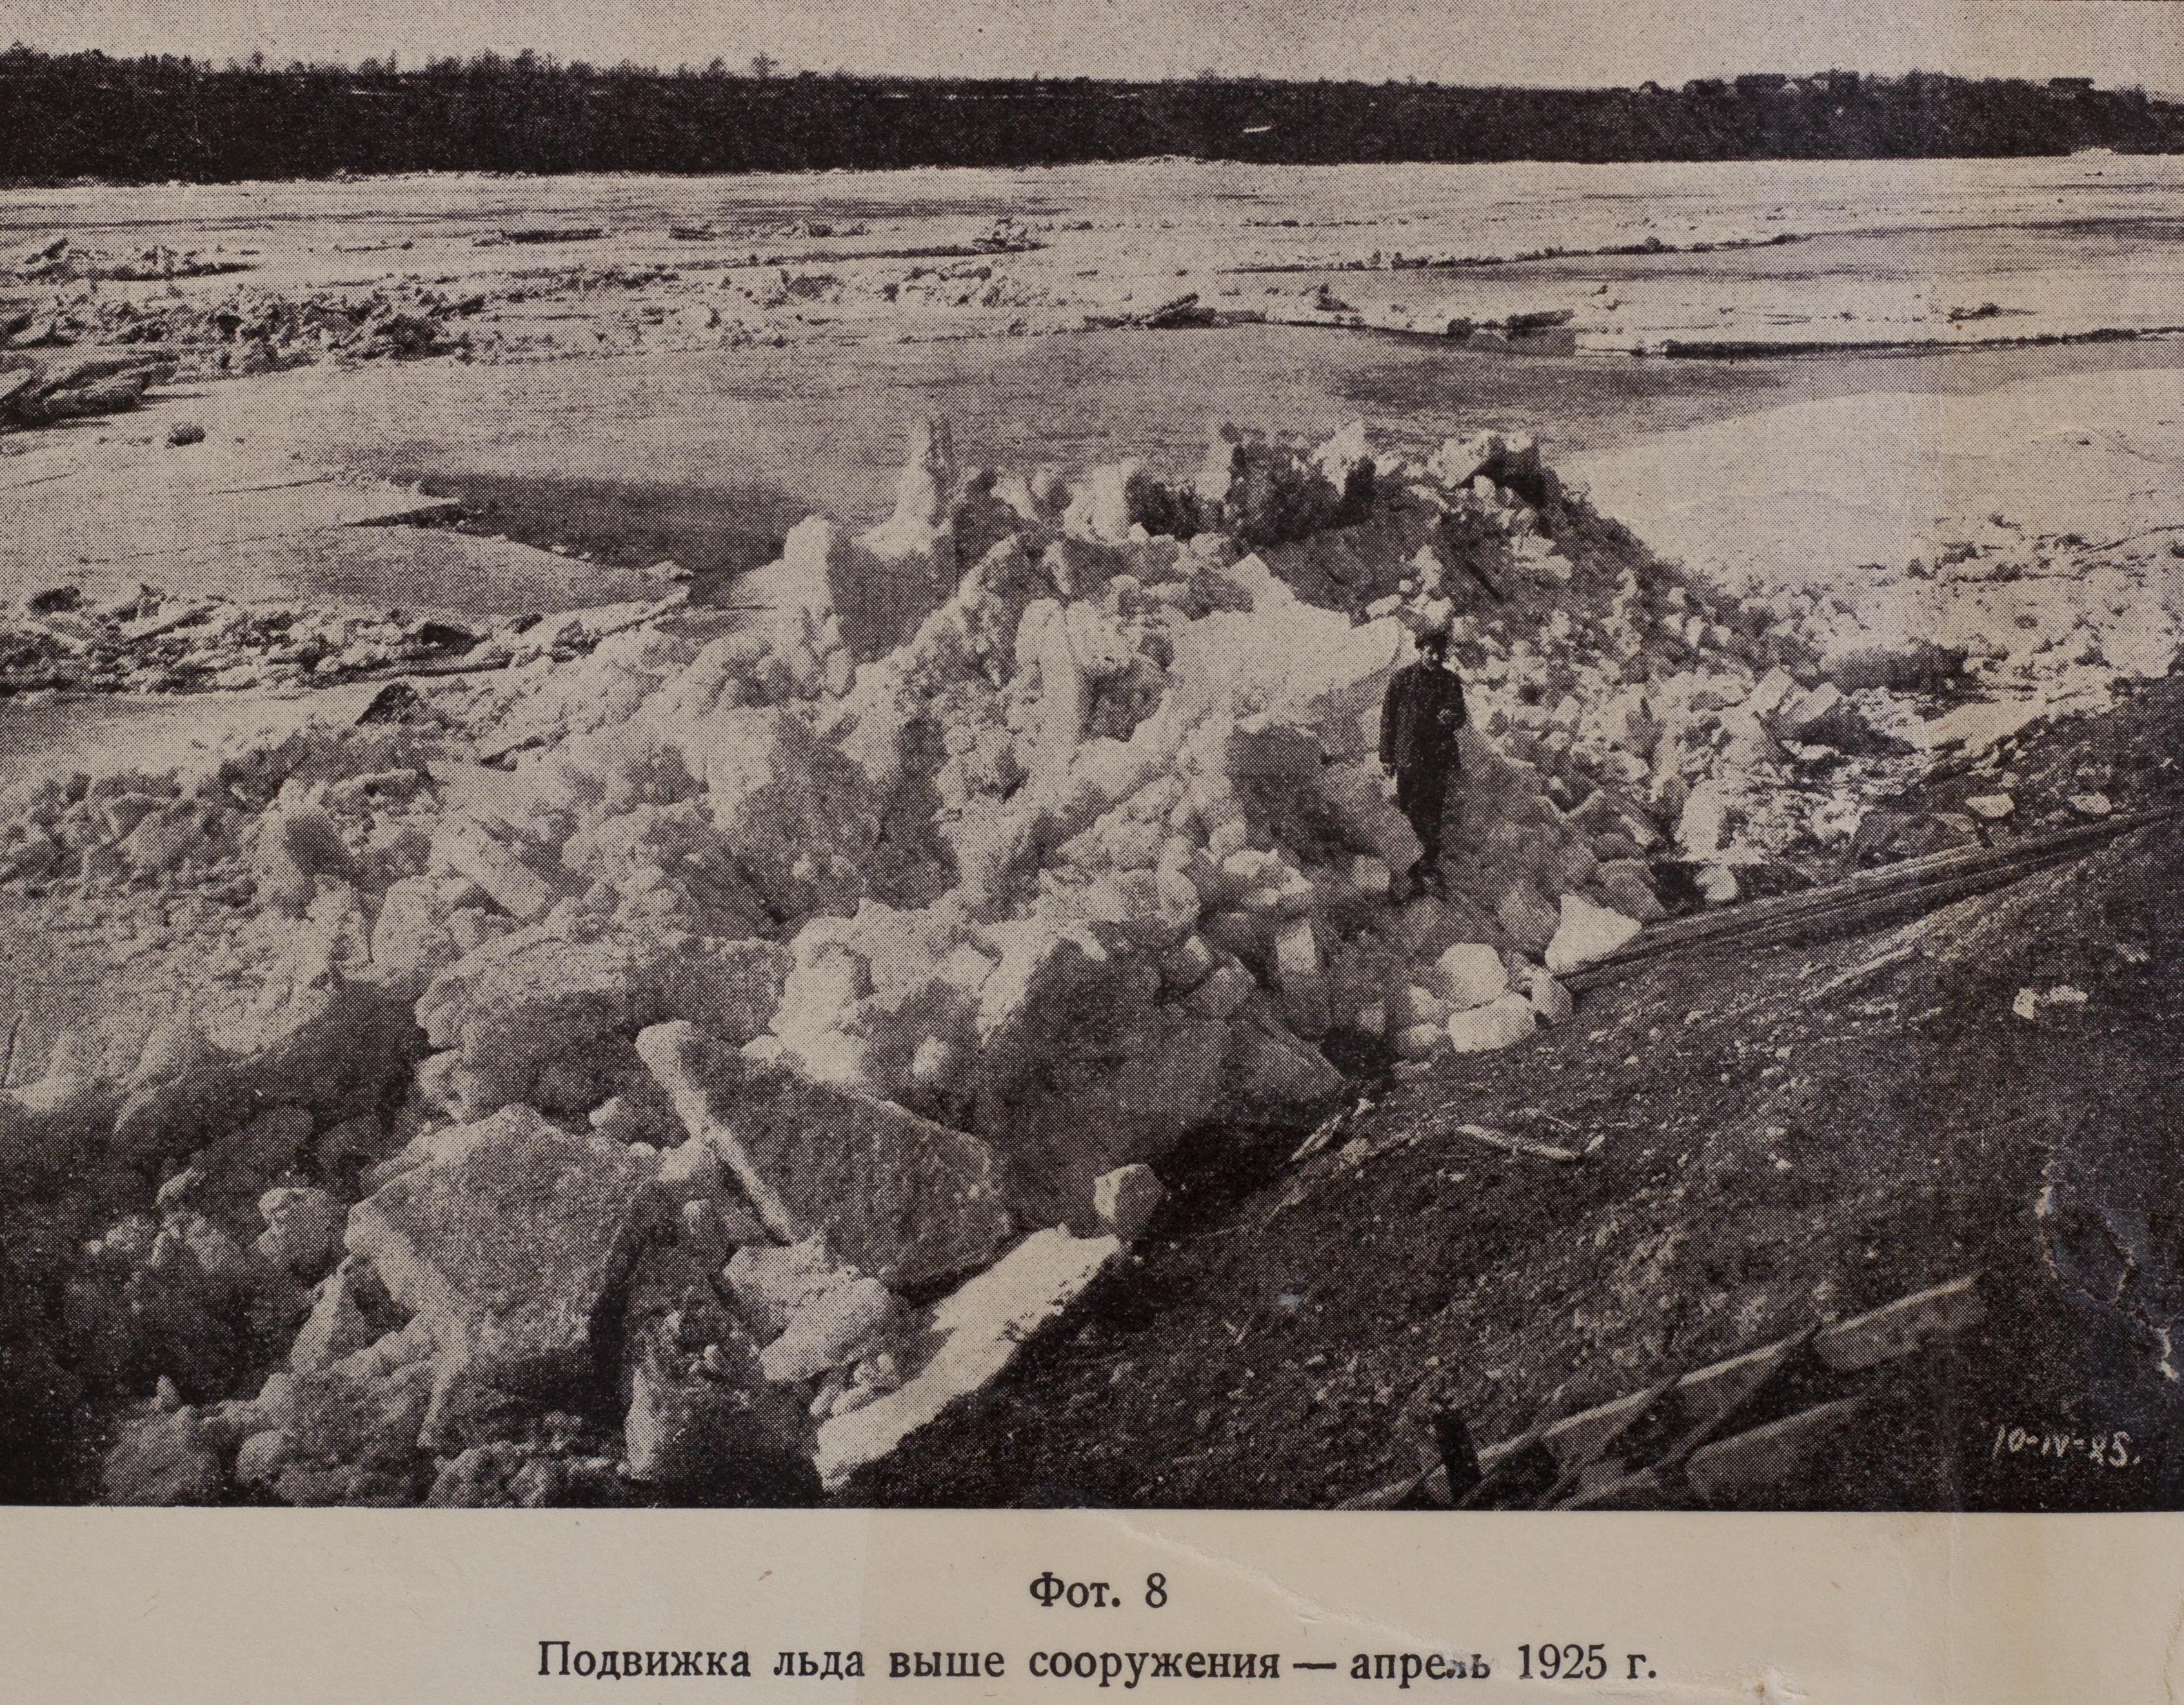 Подвижка льда выше сооружения (апрель, 1925 г.)